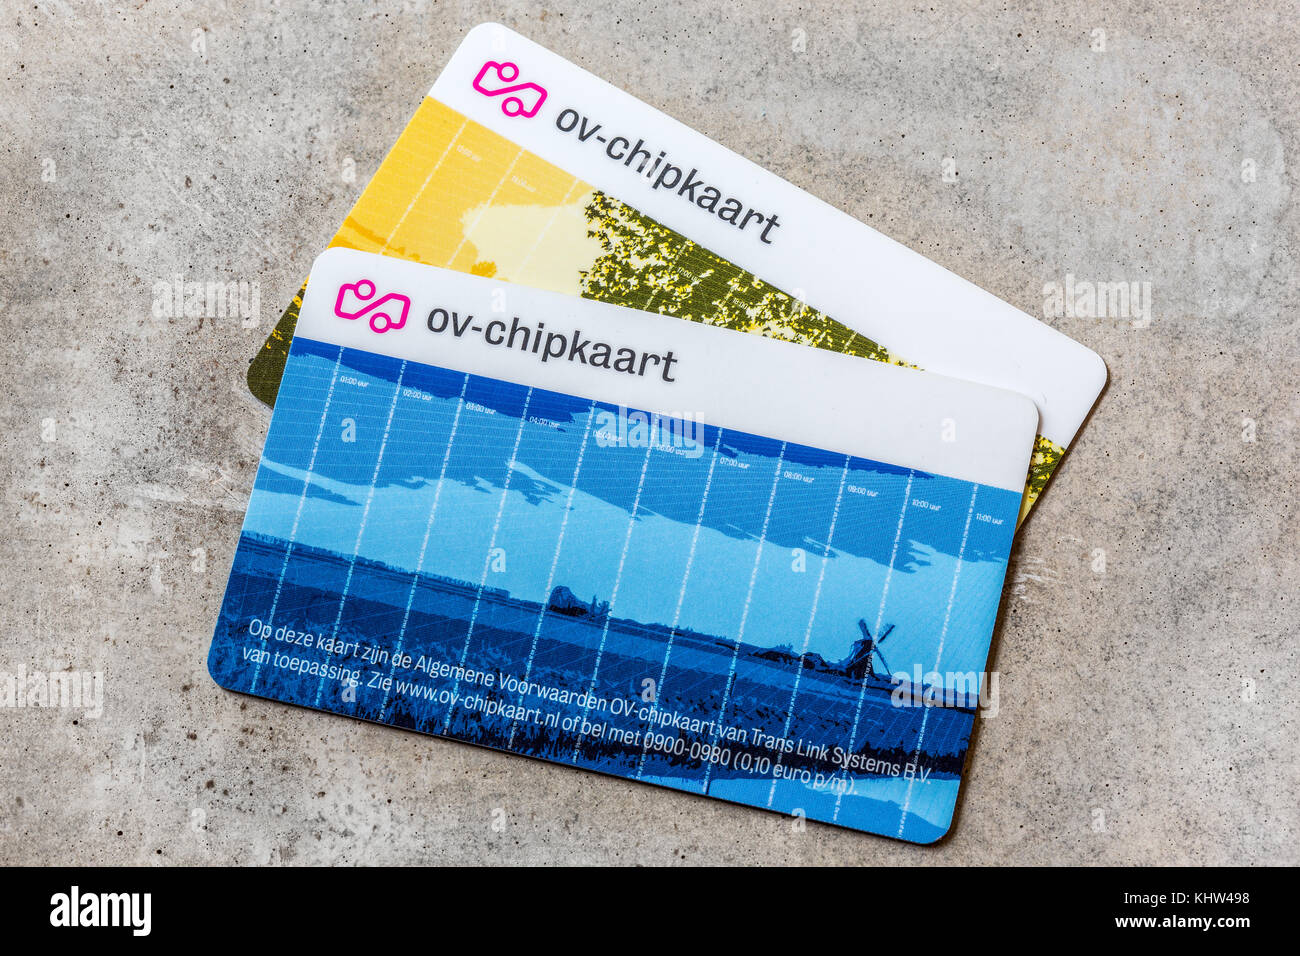 Due chipcards chiamato 'ov-chipkaart' richiesto per tutti i mezzi di trasporto pubblico nei paesi bassi Foto Stock